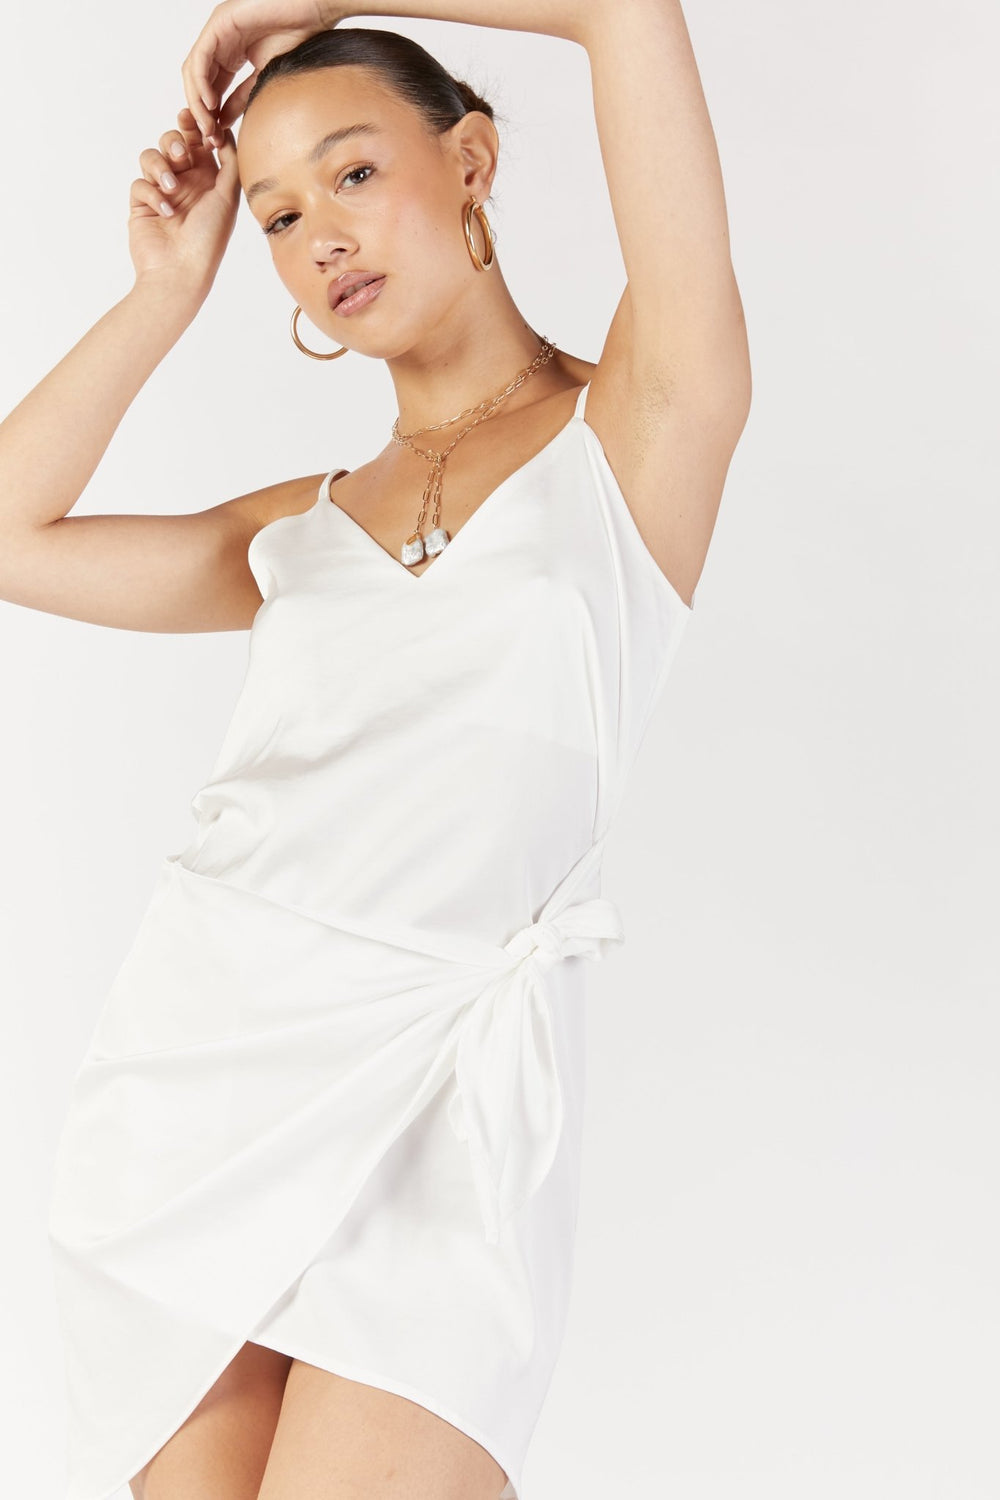 שמלת איישה בצבע לבן - Neta Efrati